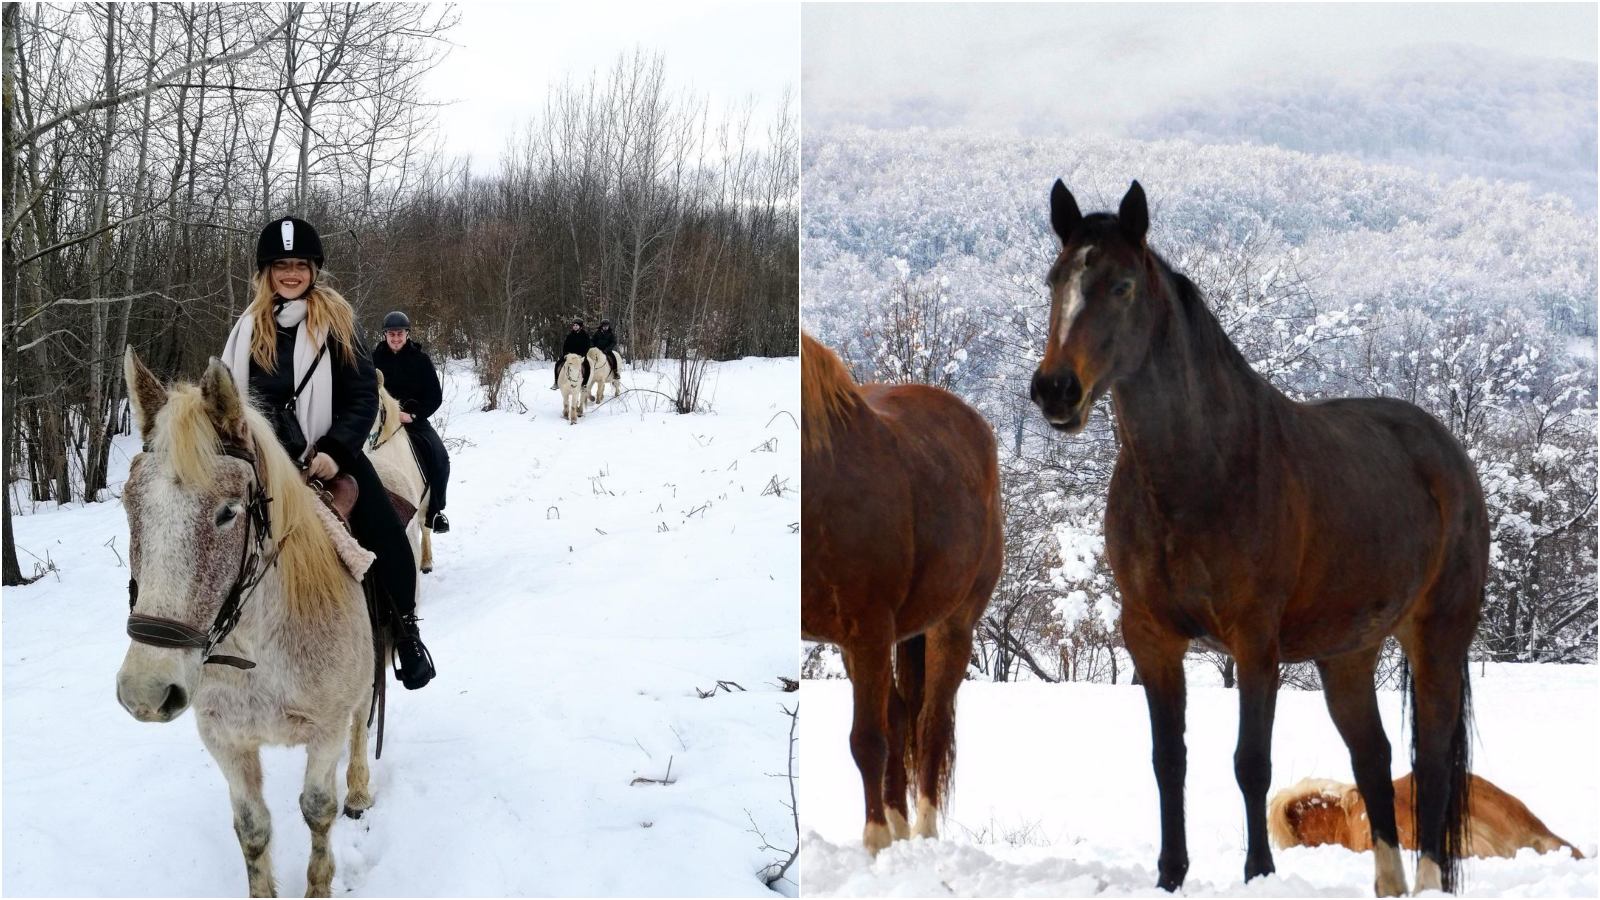 Zimska idila na ličkom ranču s konjima je razlog više da posjetite ovo divno mjesto